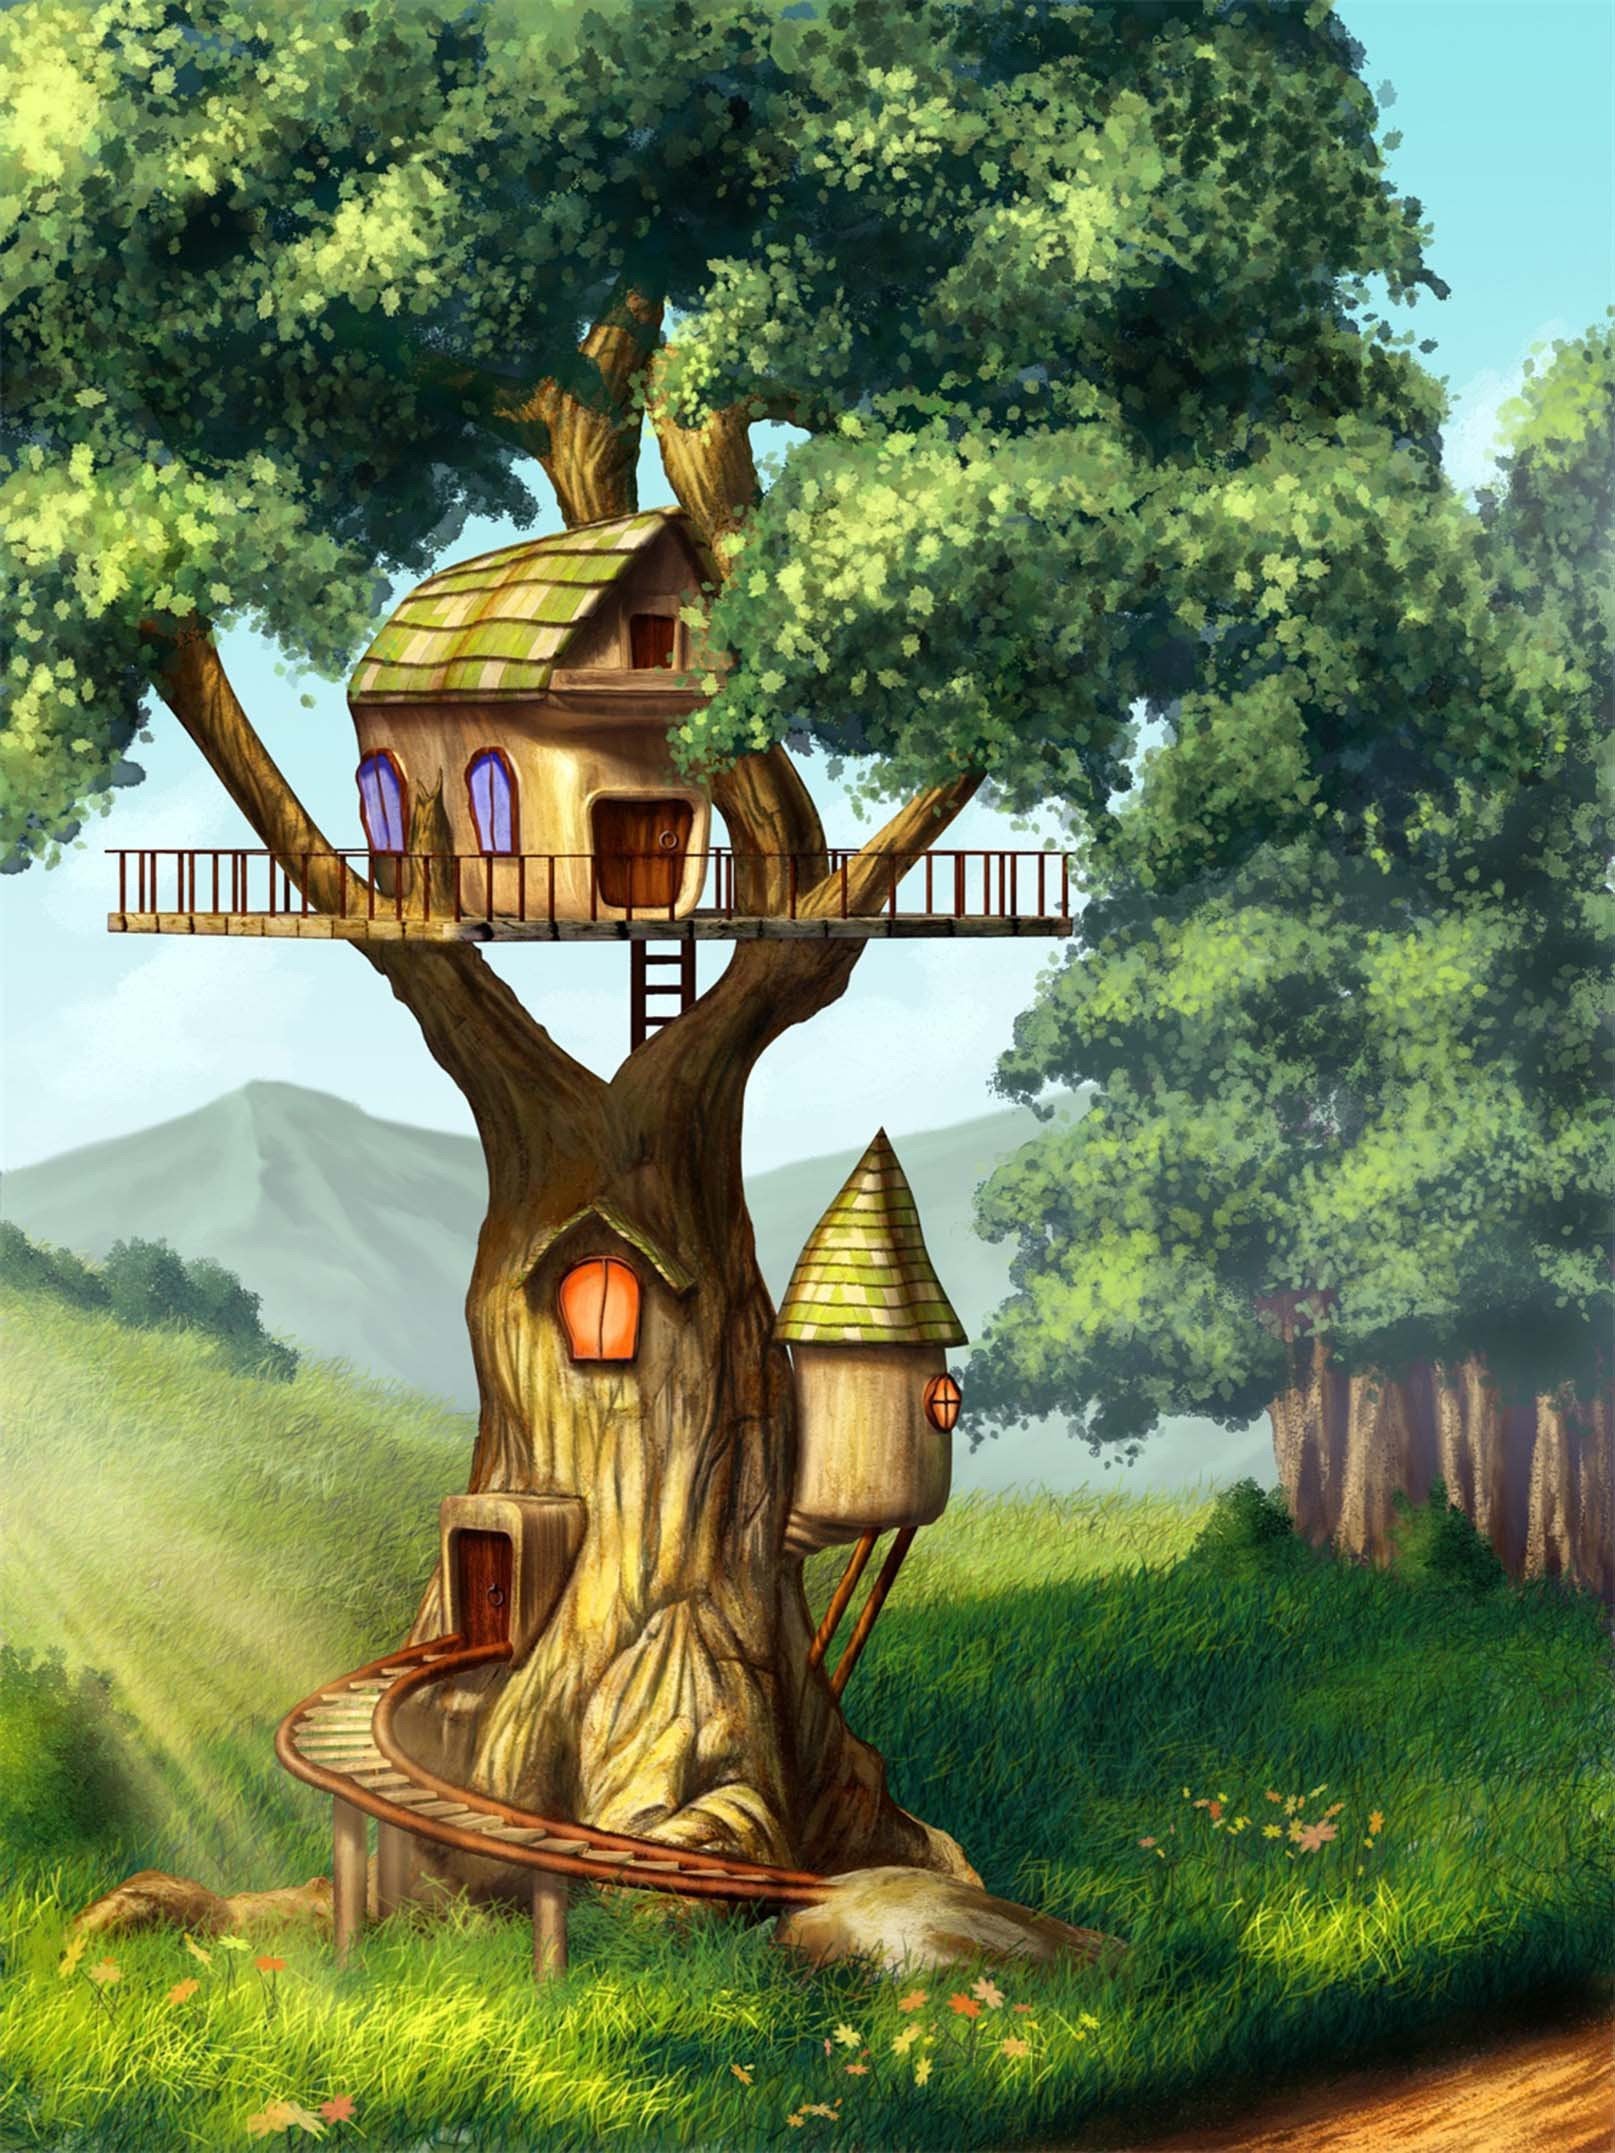 3D Lovely Tree House 1254 Stair Risers Wallpaper AJ Wallpaper 